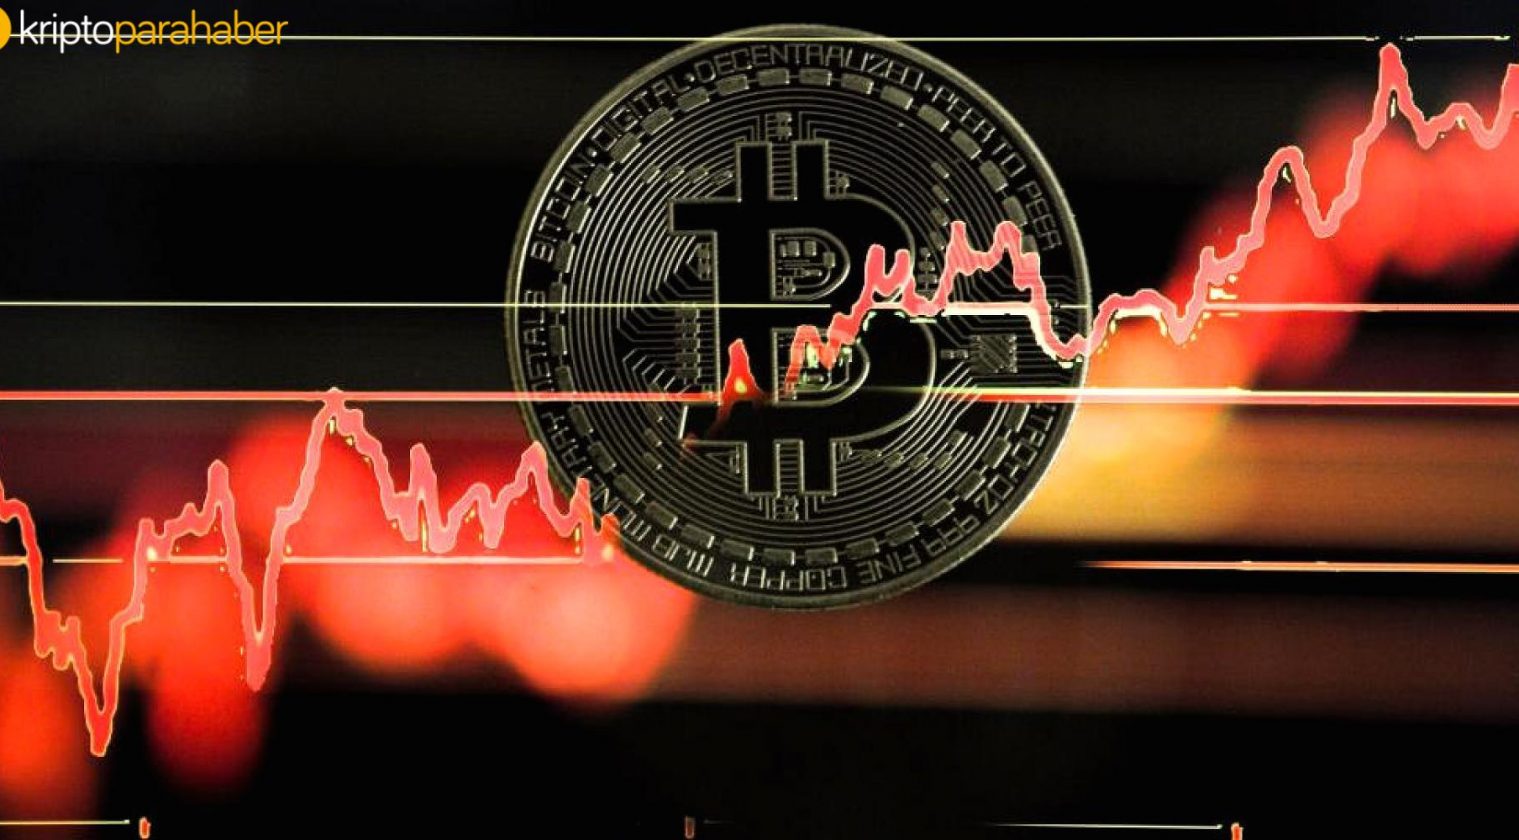 Ünlü ekonomist Bitcoin için rekora işaret etti: “50 bine yürür!”